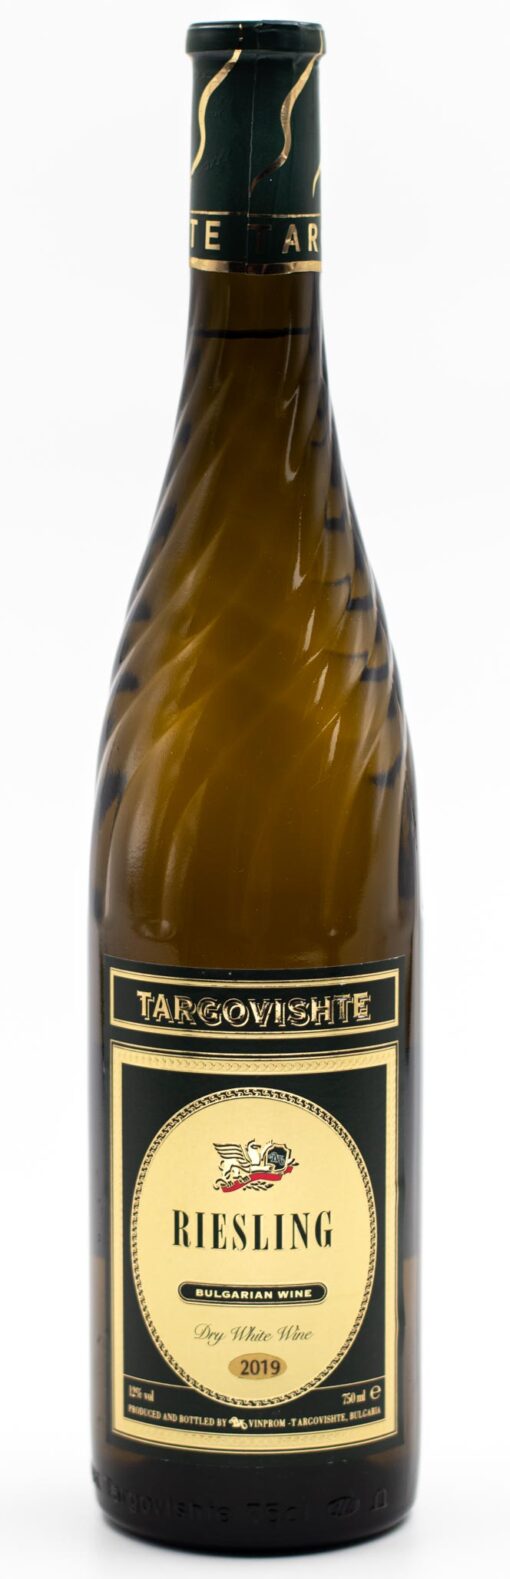 Bulharské víno bíle suché Riesling Targovishte v zakroucené láhvi prowine